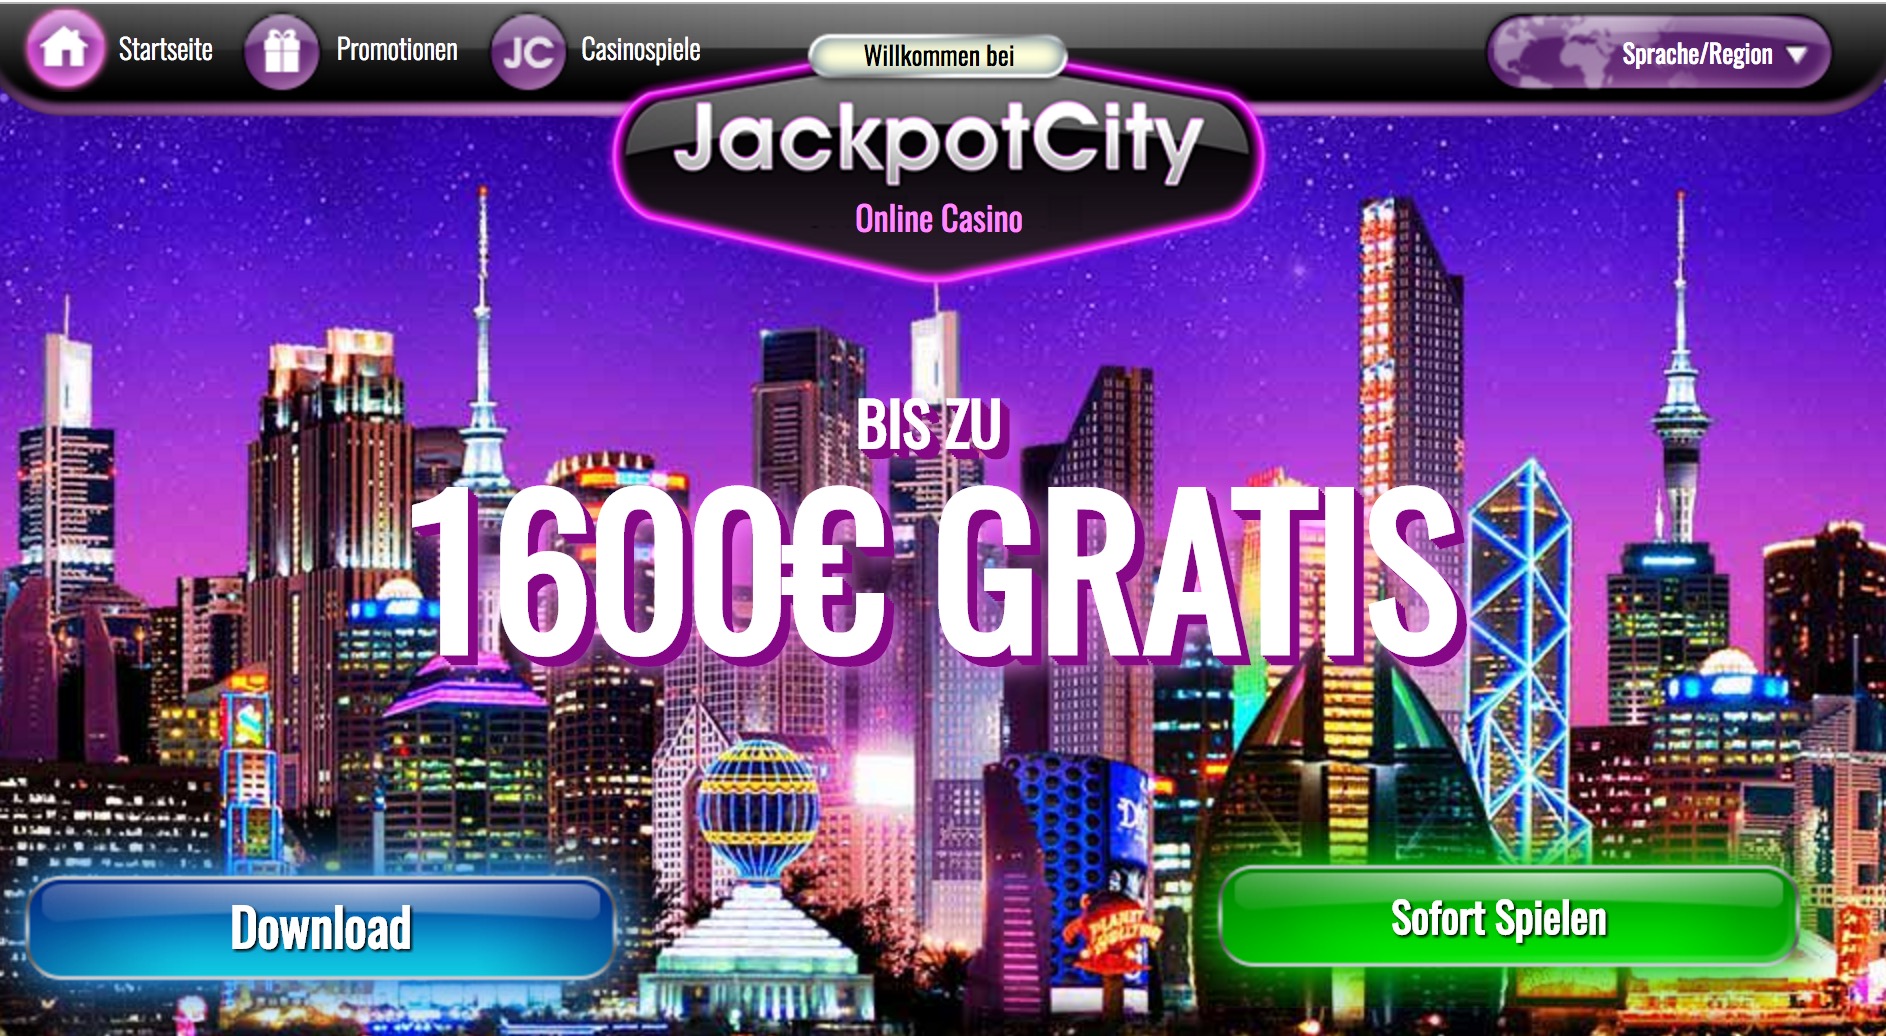 Saftiges Startkapital gefällig? Sichere dir bis zu 1.600 € Willkommensbonus im Jackpot City Online Casino und räume dicke Gewinne ab.